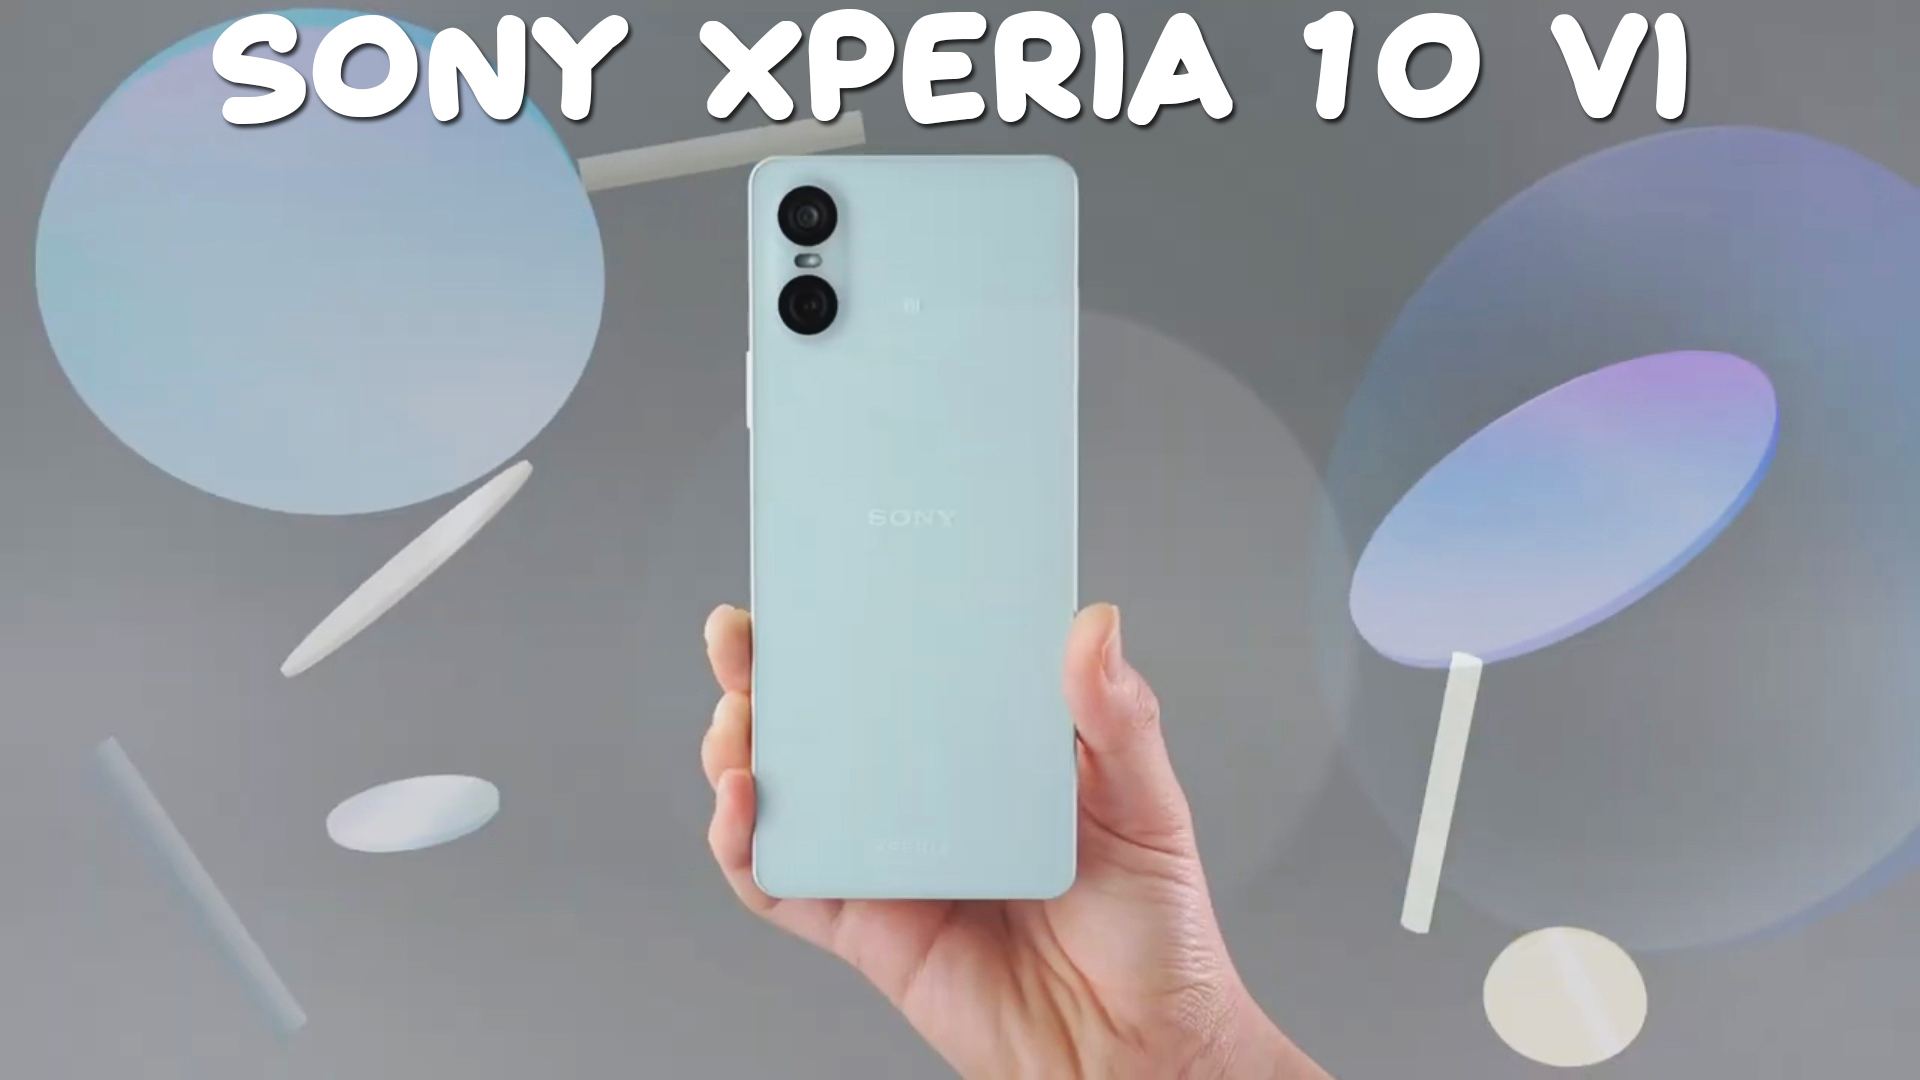 Sony Xperia 10 VI первый обзор на русском